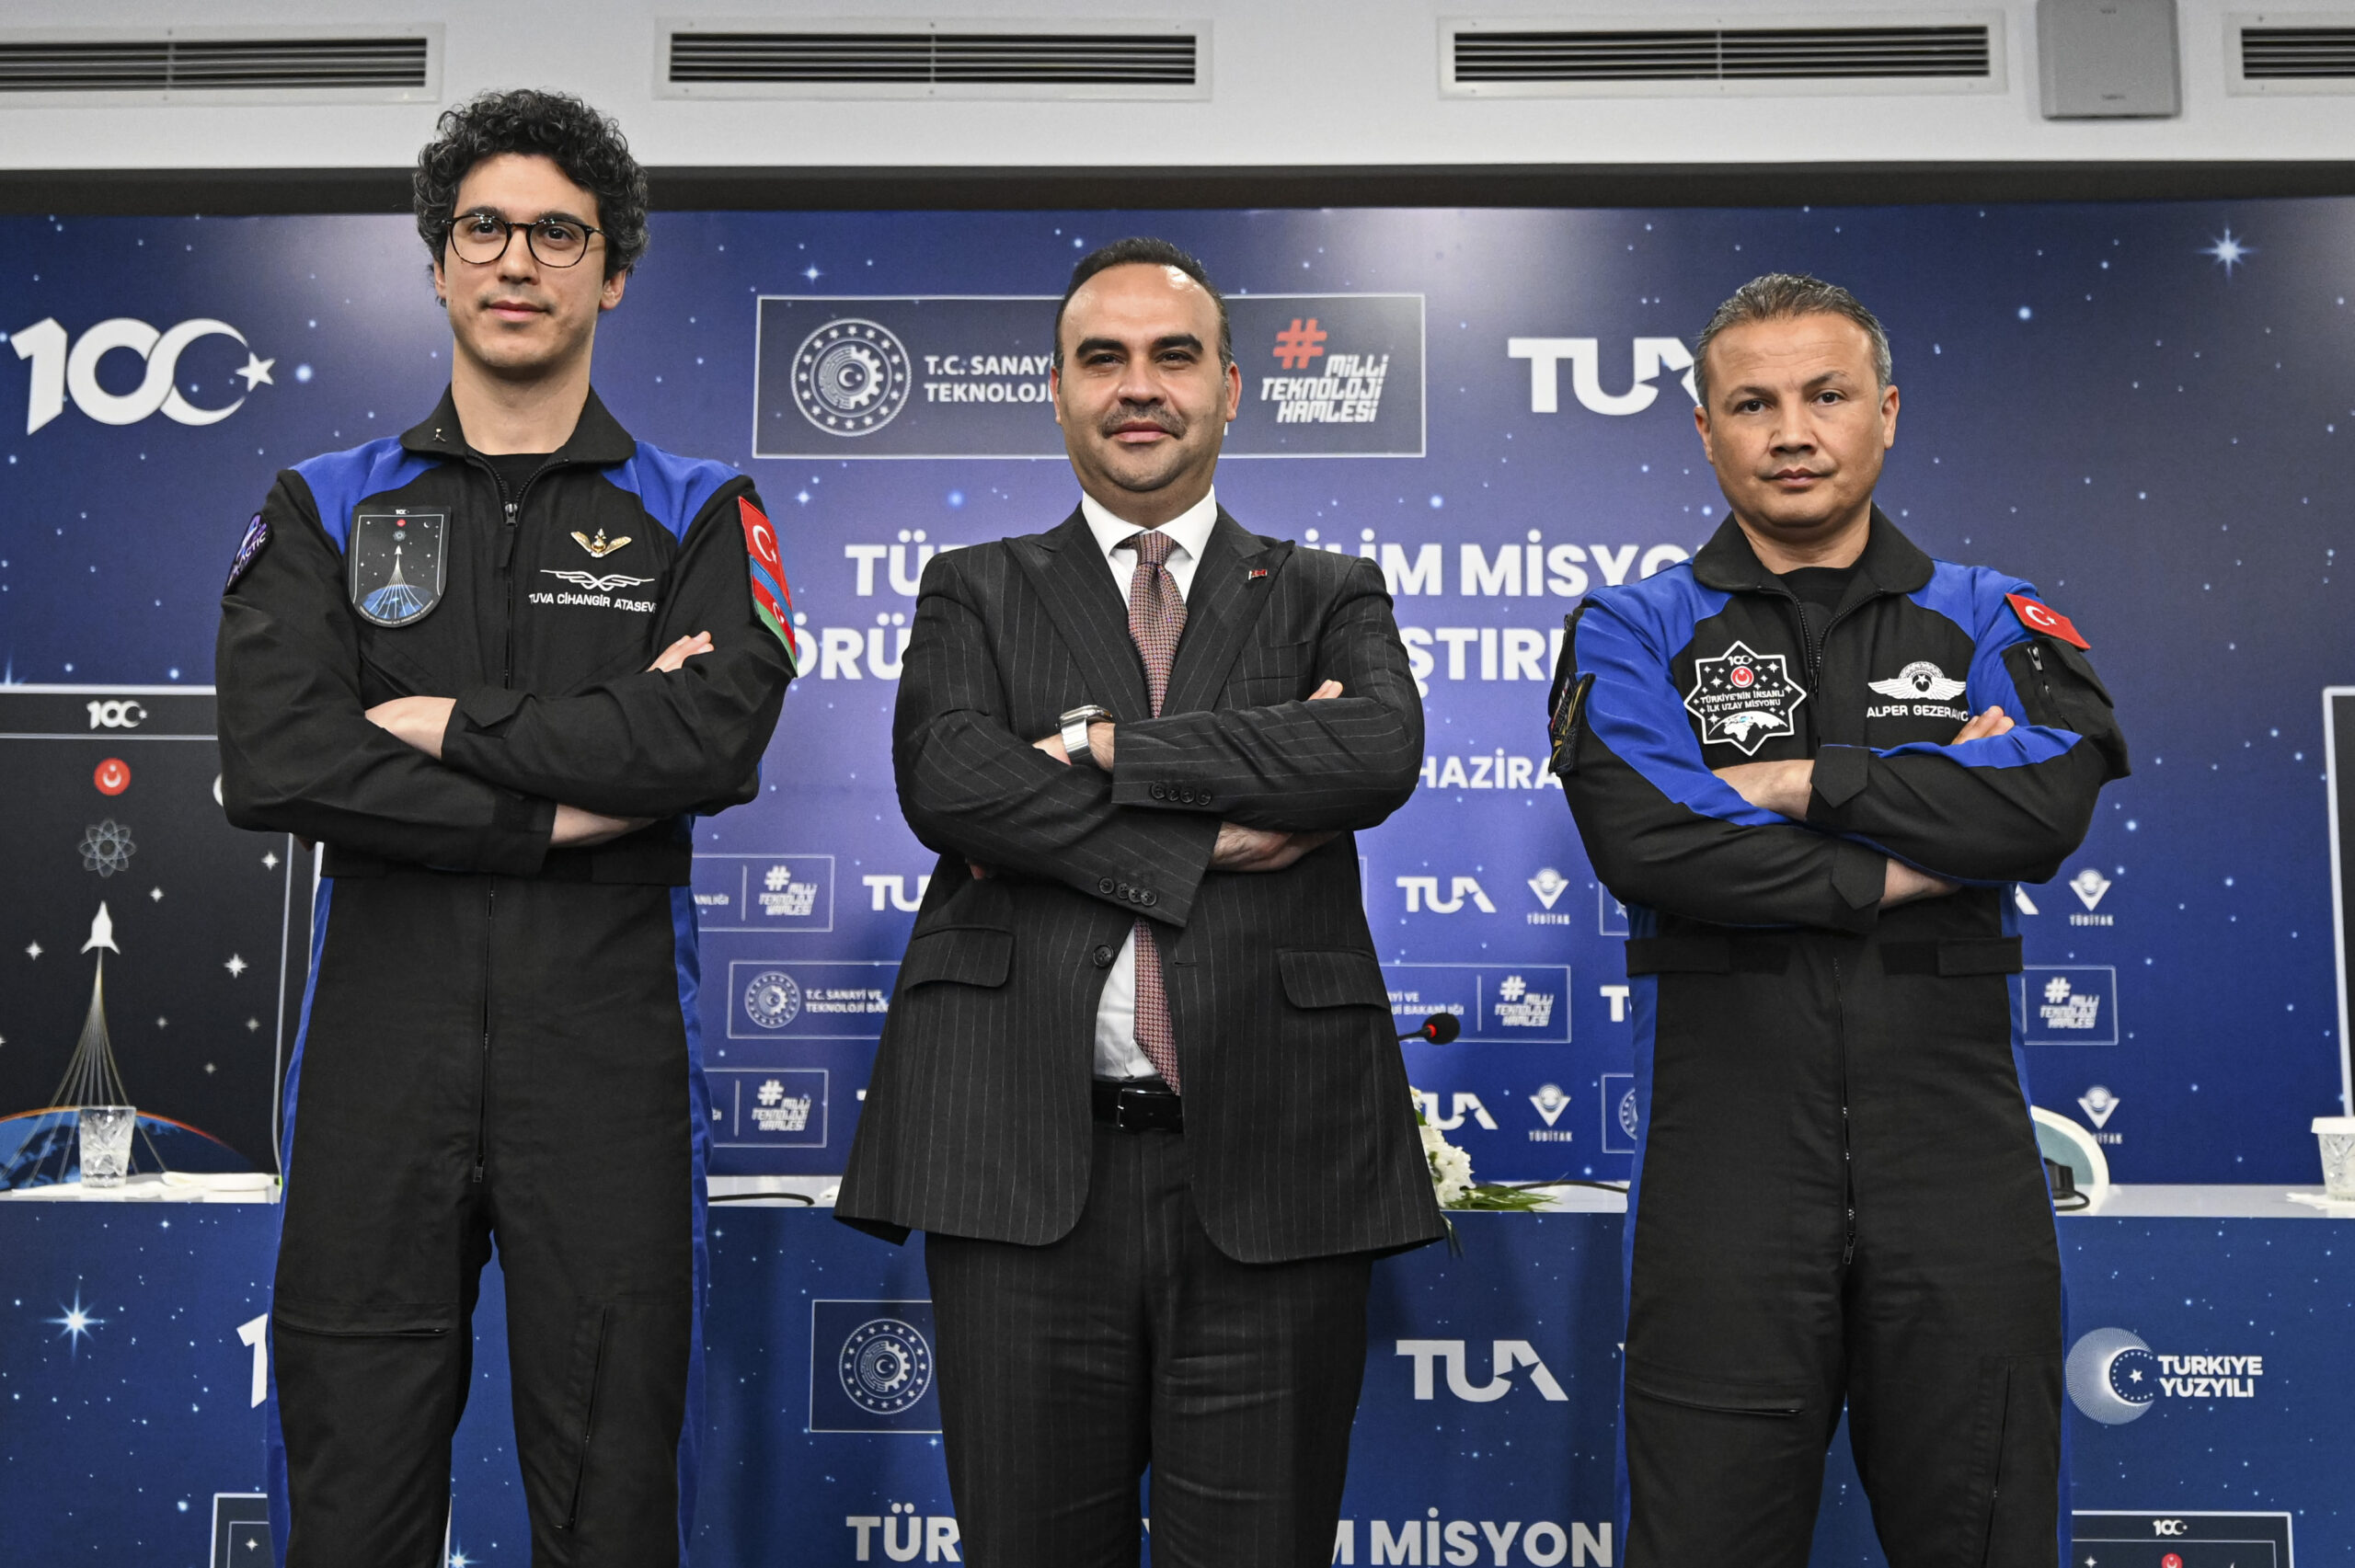 Tech minister, Turkish astronauts highlight Türkiye's space ambitions